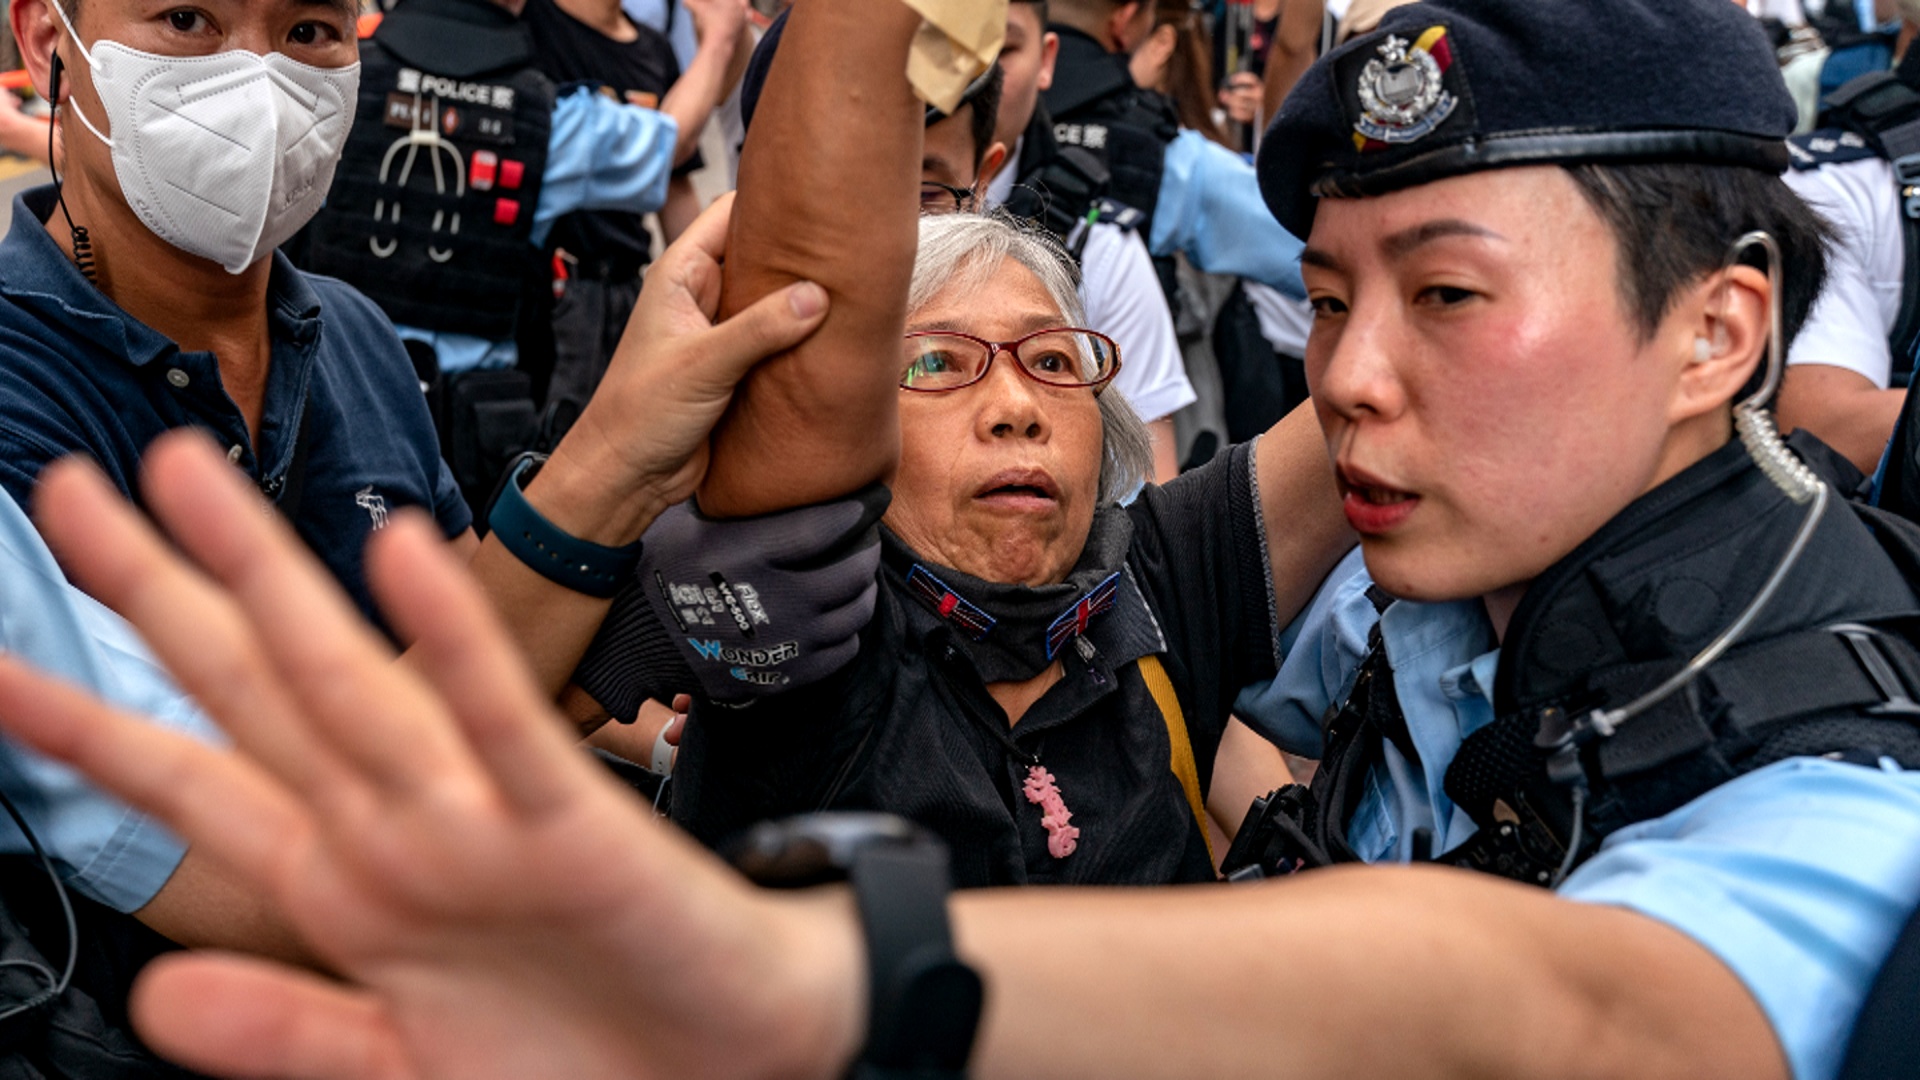 В Гонконге представили более жёсткую версию закона о нацбезопасности